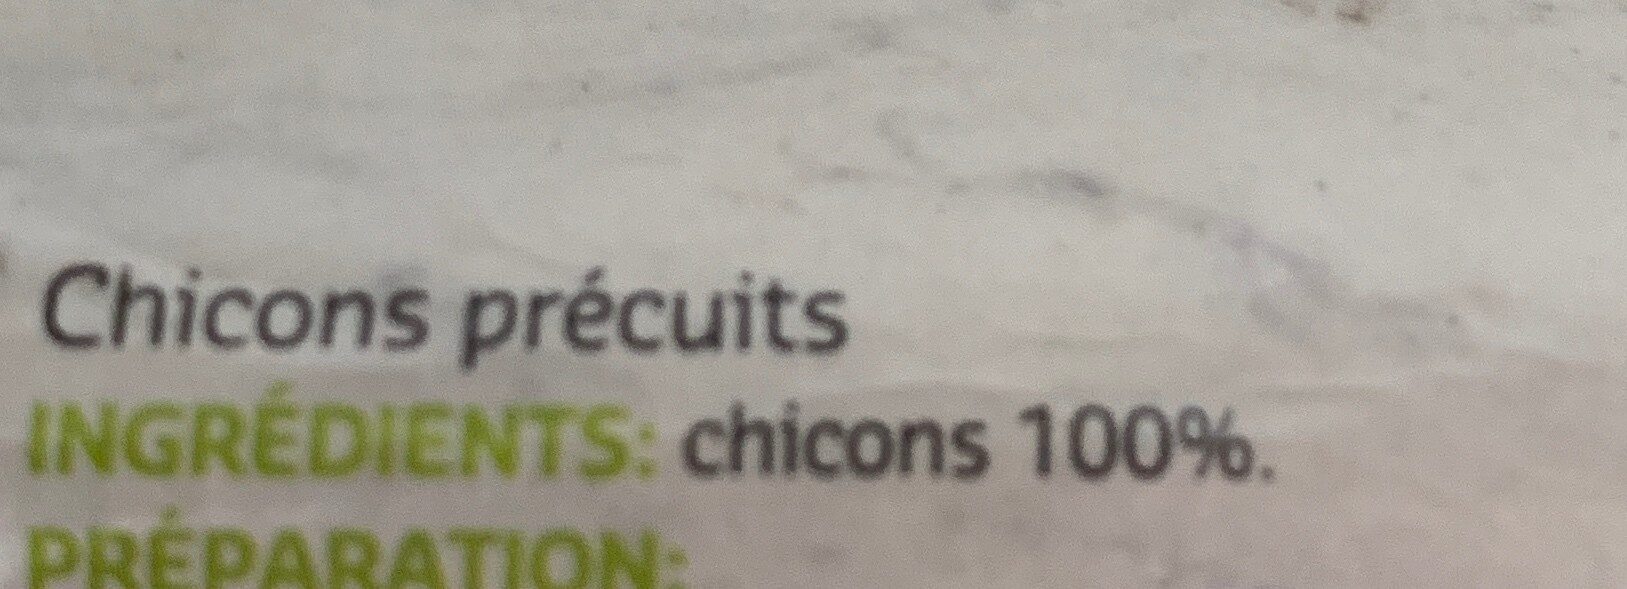 Chicons - Witloof - Ingrediënten - fr